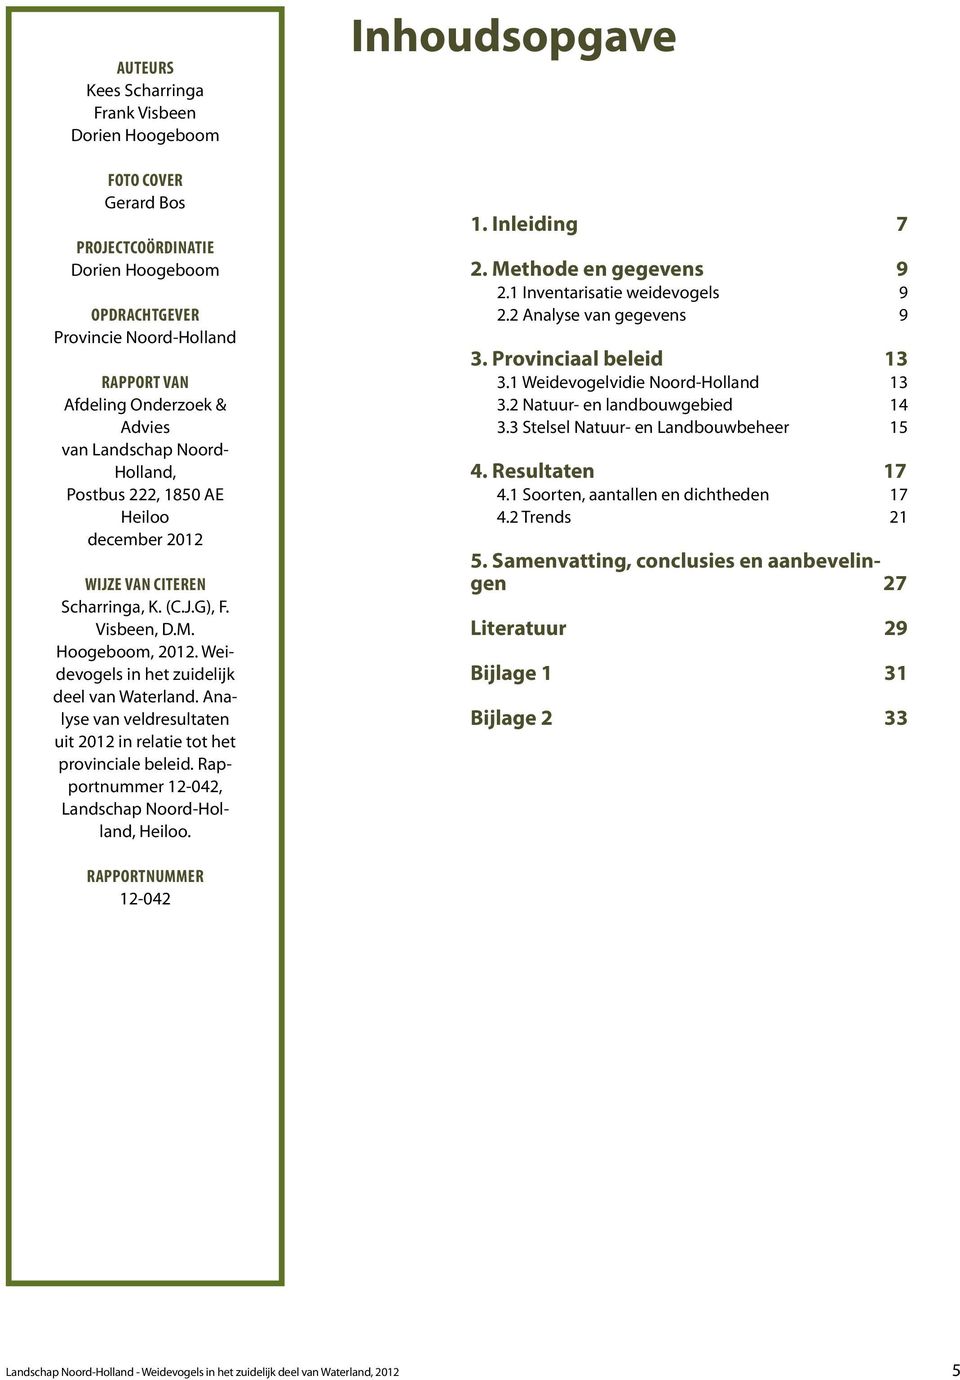 Analyse van veldresultaten uit 2012 in relatie tot het provinciale beleid. Rapportnummer 12-042, Landschap Noord-Holland, Heiloo. Inhoudsopgave 1. Inleiding 7 2. Methode en gegevens 9 2.